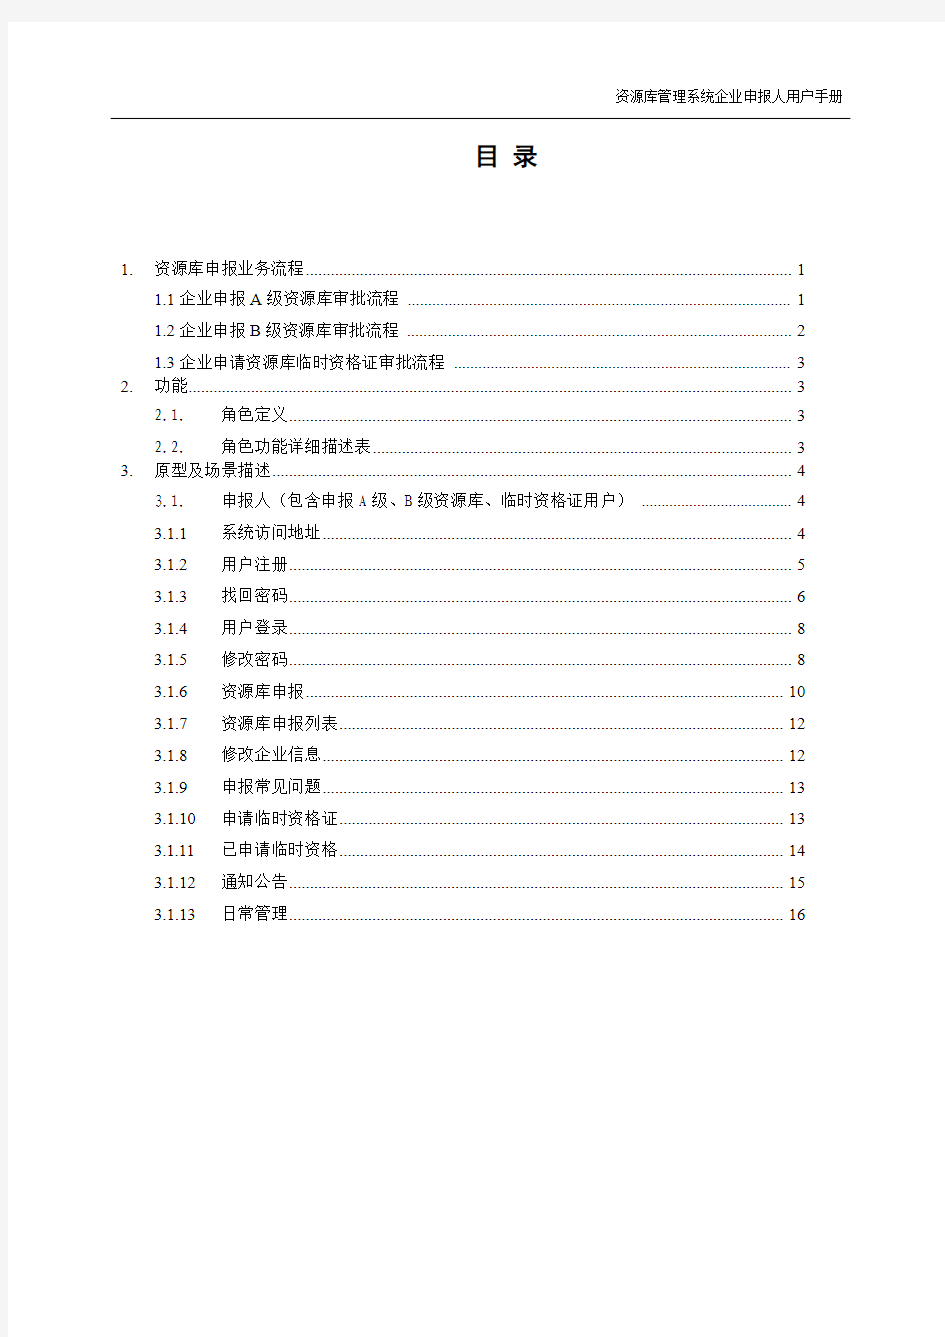 中国石化工程建设市场资源库管理系统企业申报人用户手册